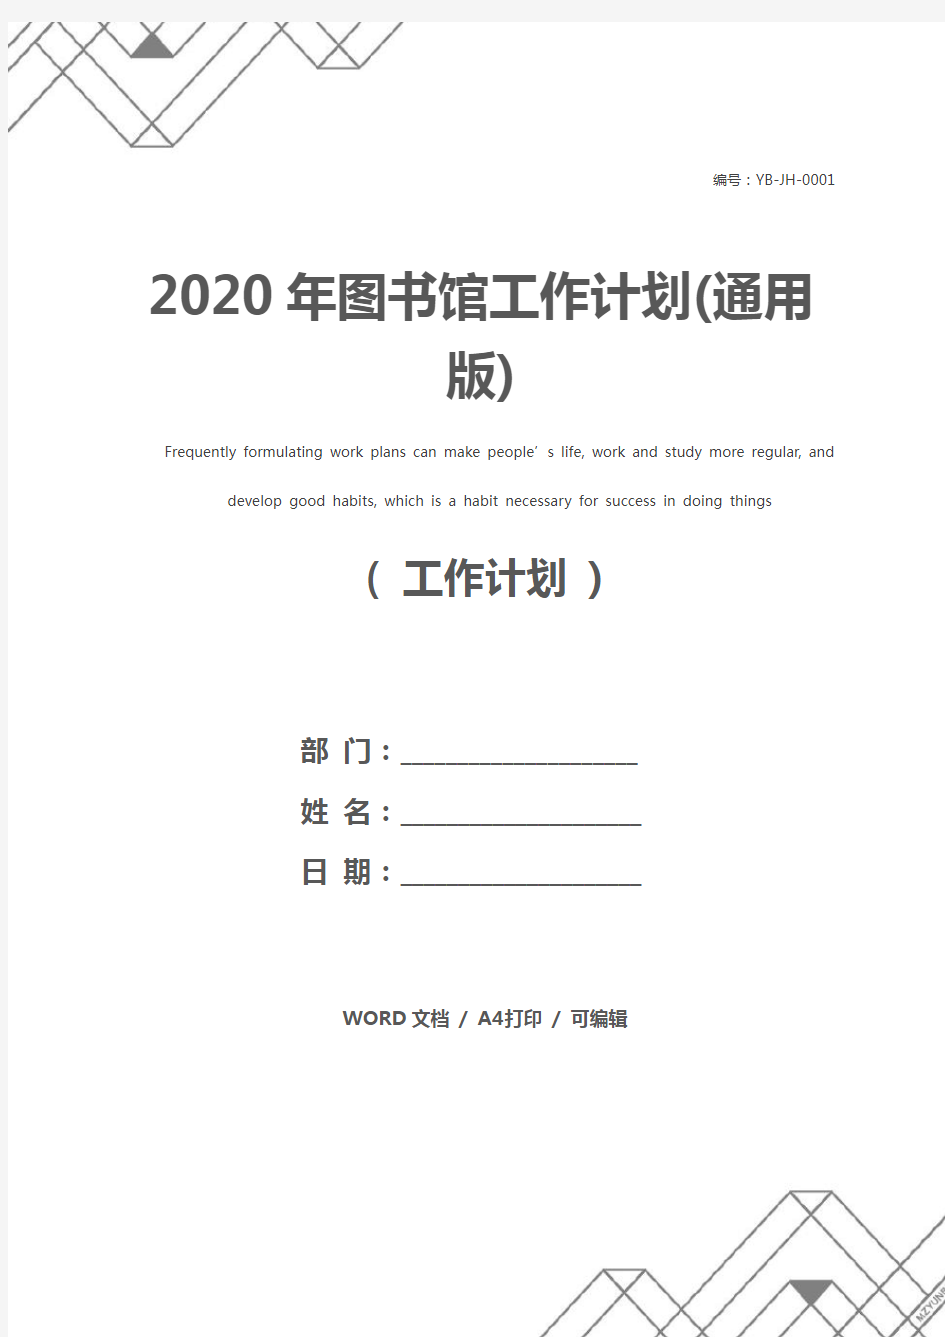 2020年图书馆工作计划(通用版)